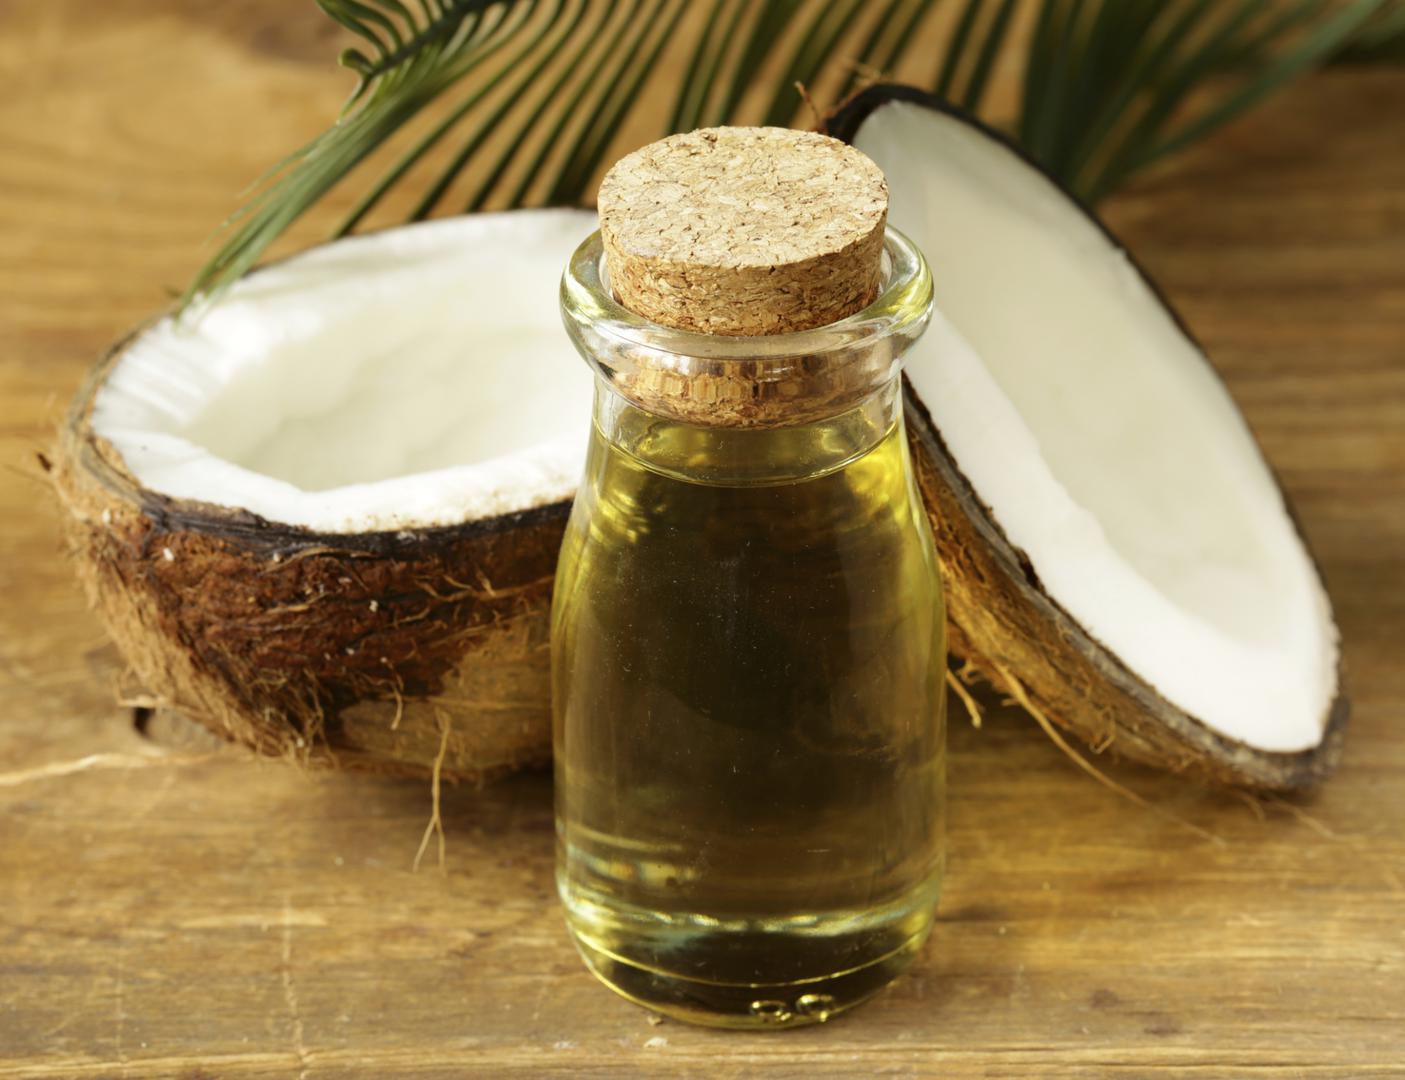 Kokos je, osim što je ukusan, voće s jedinstvenom kombinacijom nezasićenih masnih kiselina. Jedite mnogo kokosa, a hranu pripremajte s pomoću kokosovog ulja i spasite se od kardiovaskularnih bolesti.